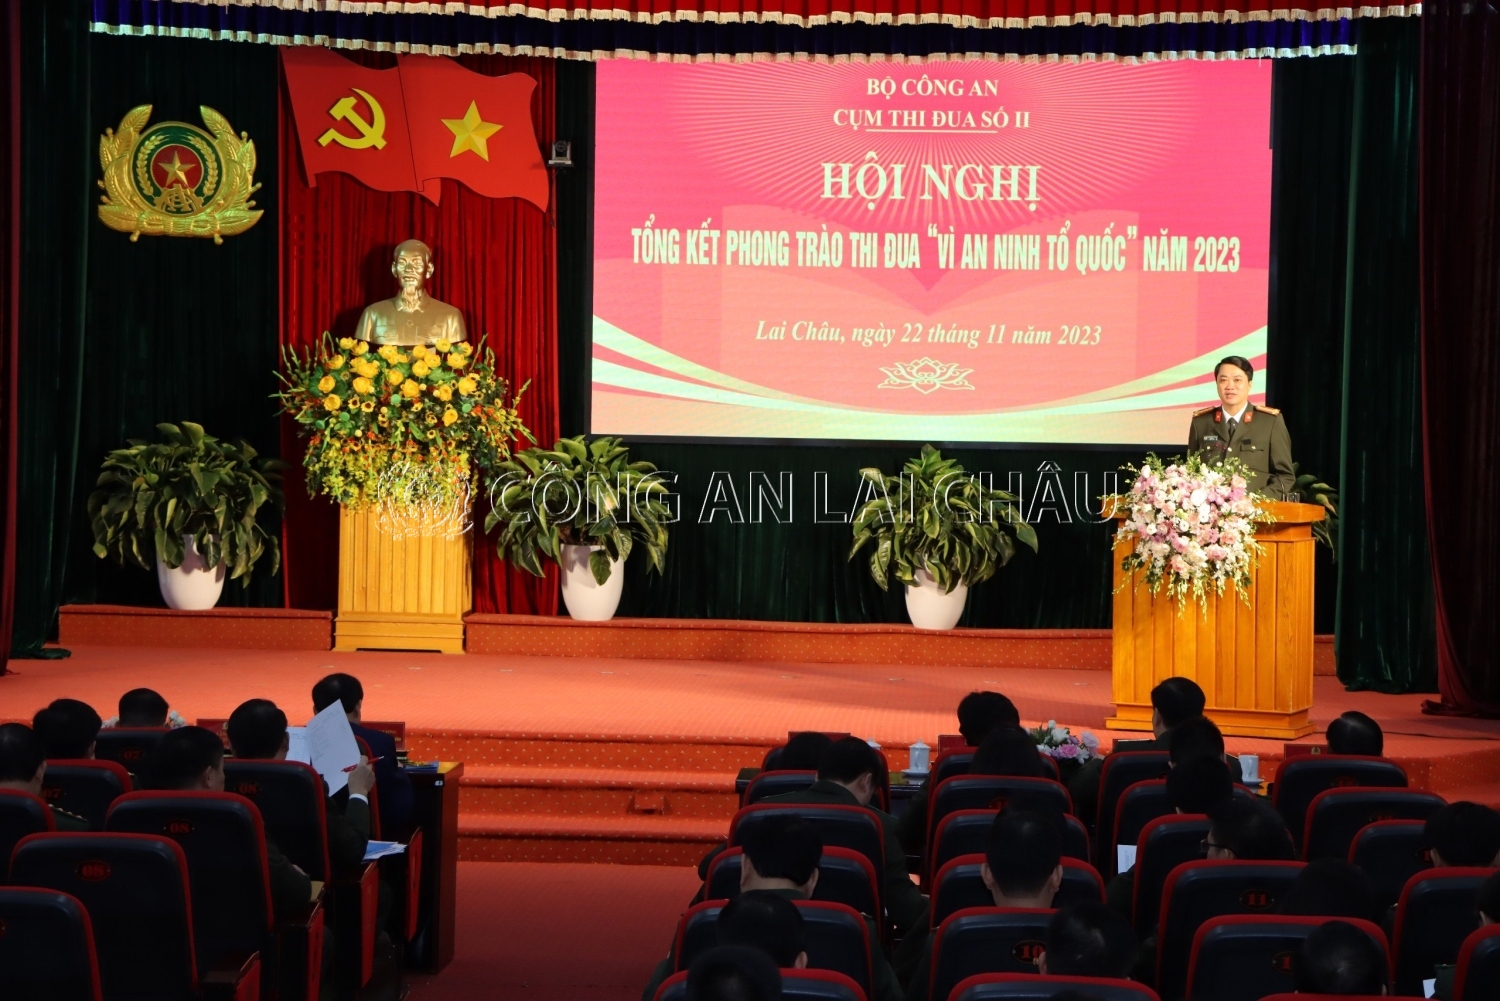 Đại tá Nguyễn Viết Giang Giám đốc Công an tỉnh Lai Châu, Đơn vị Cụm trưởng chủ trì tại Hội nghị